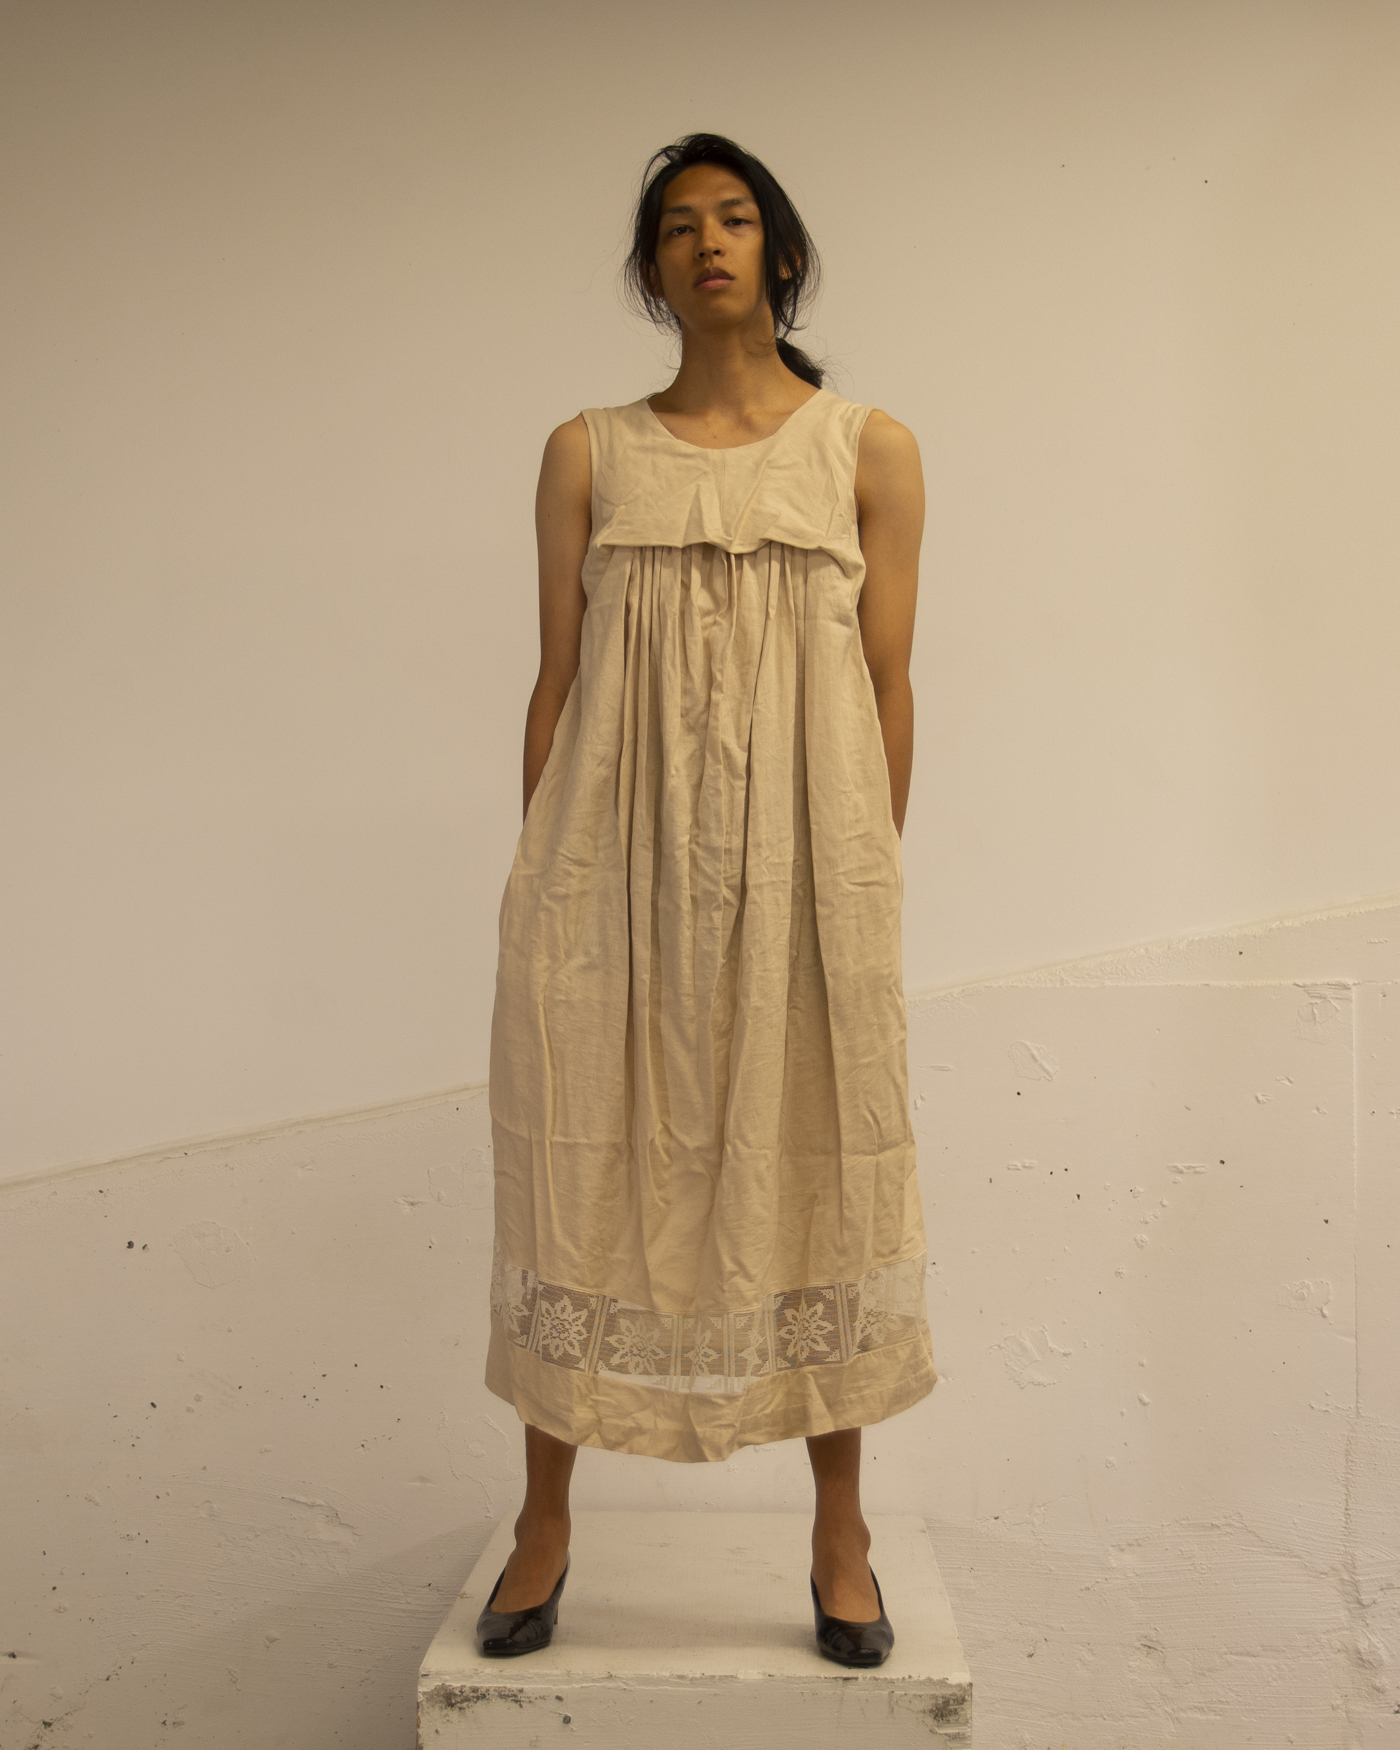 The artist stands wearing a dress.